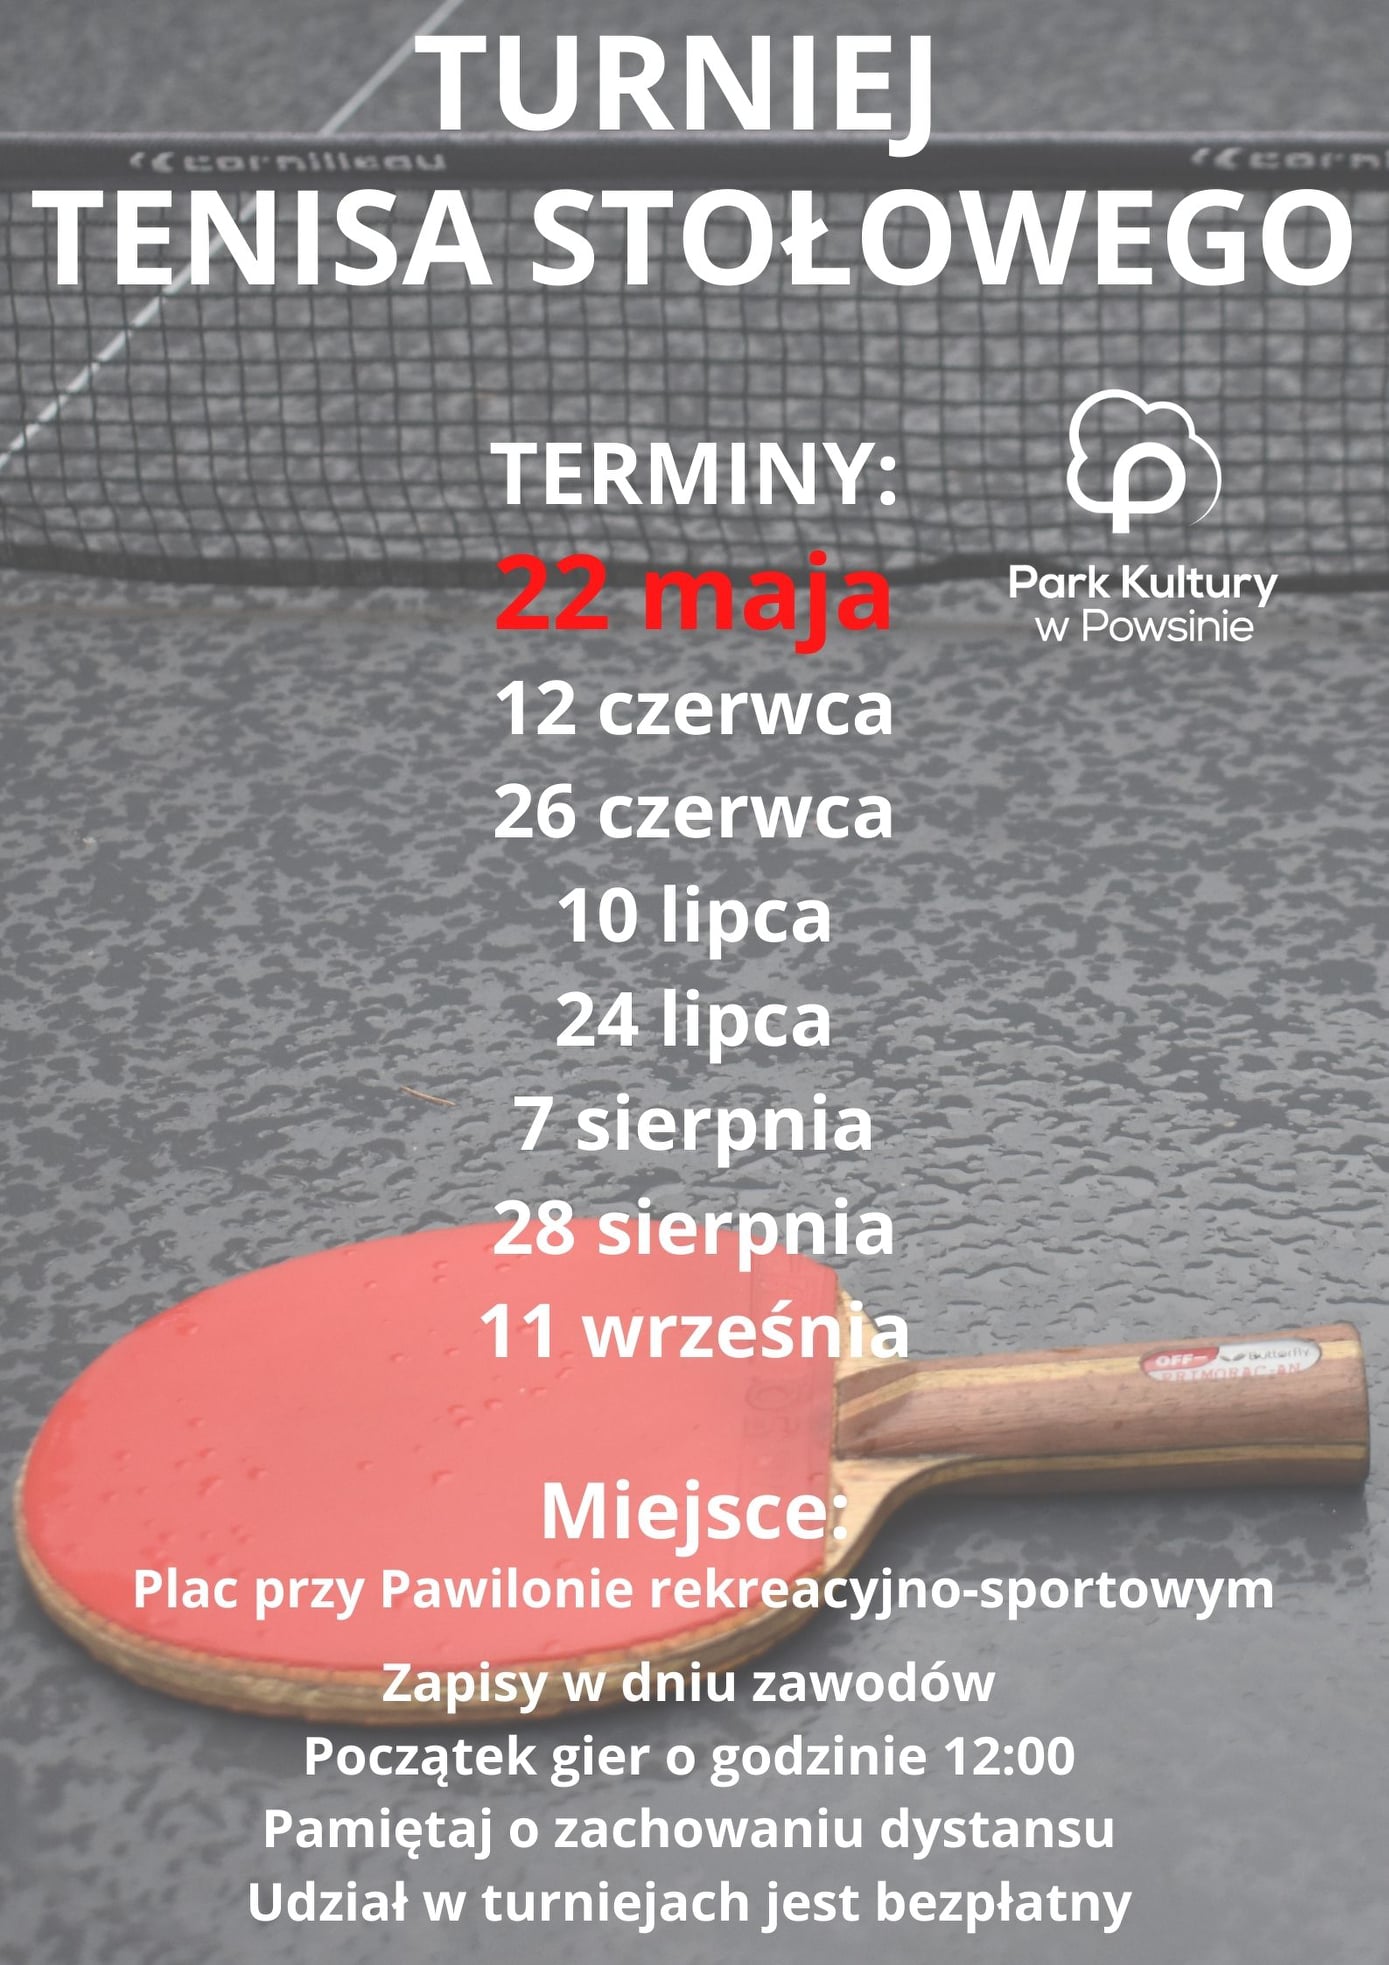 Plakat turnieju Cykl turniejów w tenisie stołowym w Parku Kultury w Powsinie 2021 - 8 termin